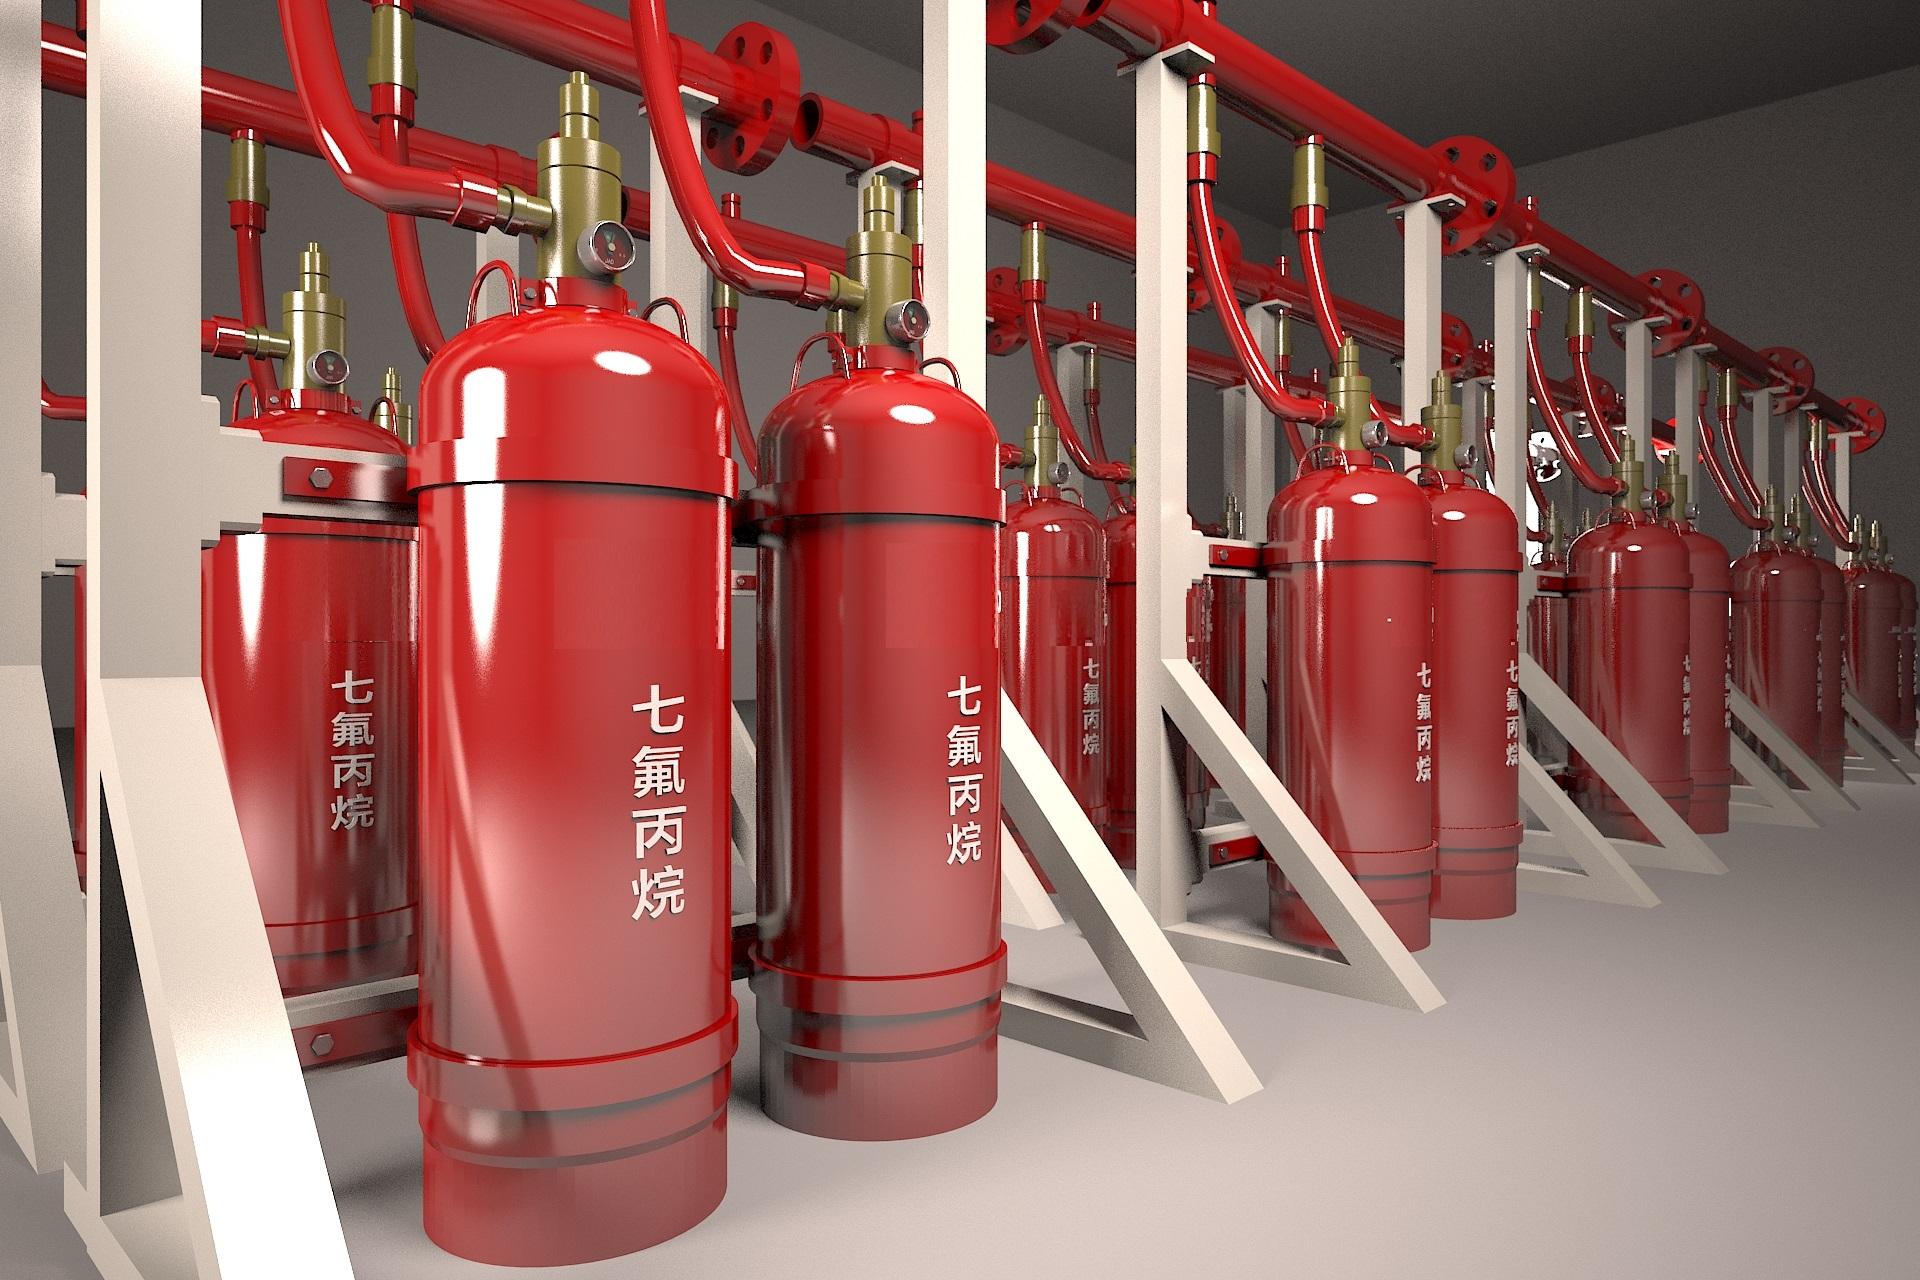 气体灭火系统的安装以及会发生爆炸危害的原因分析、检测方法